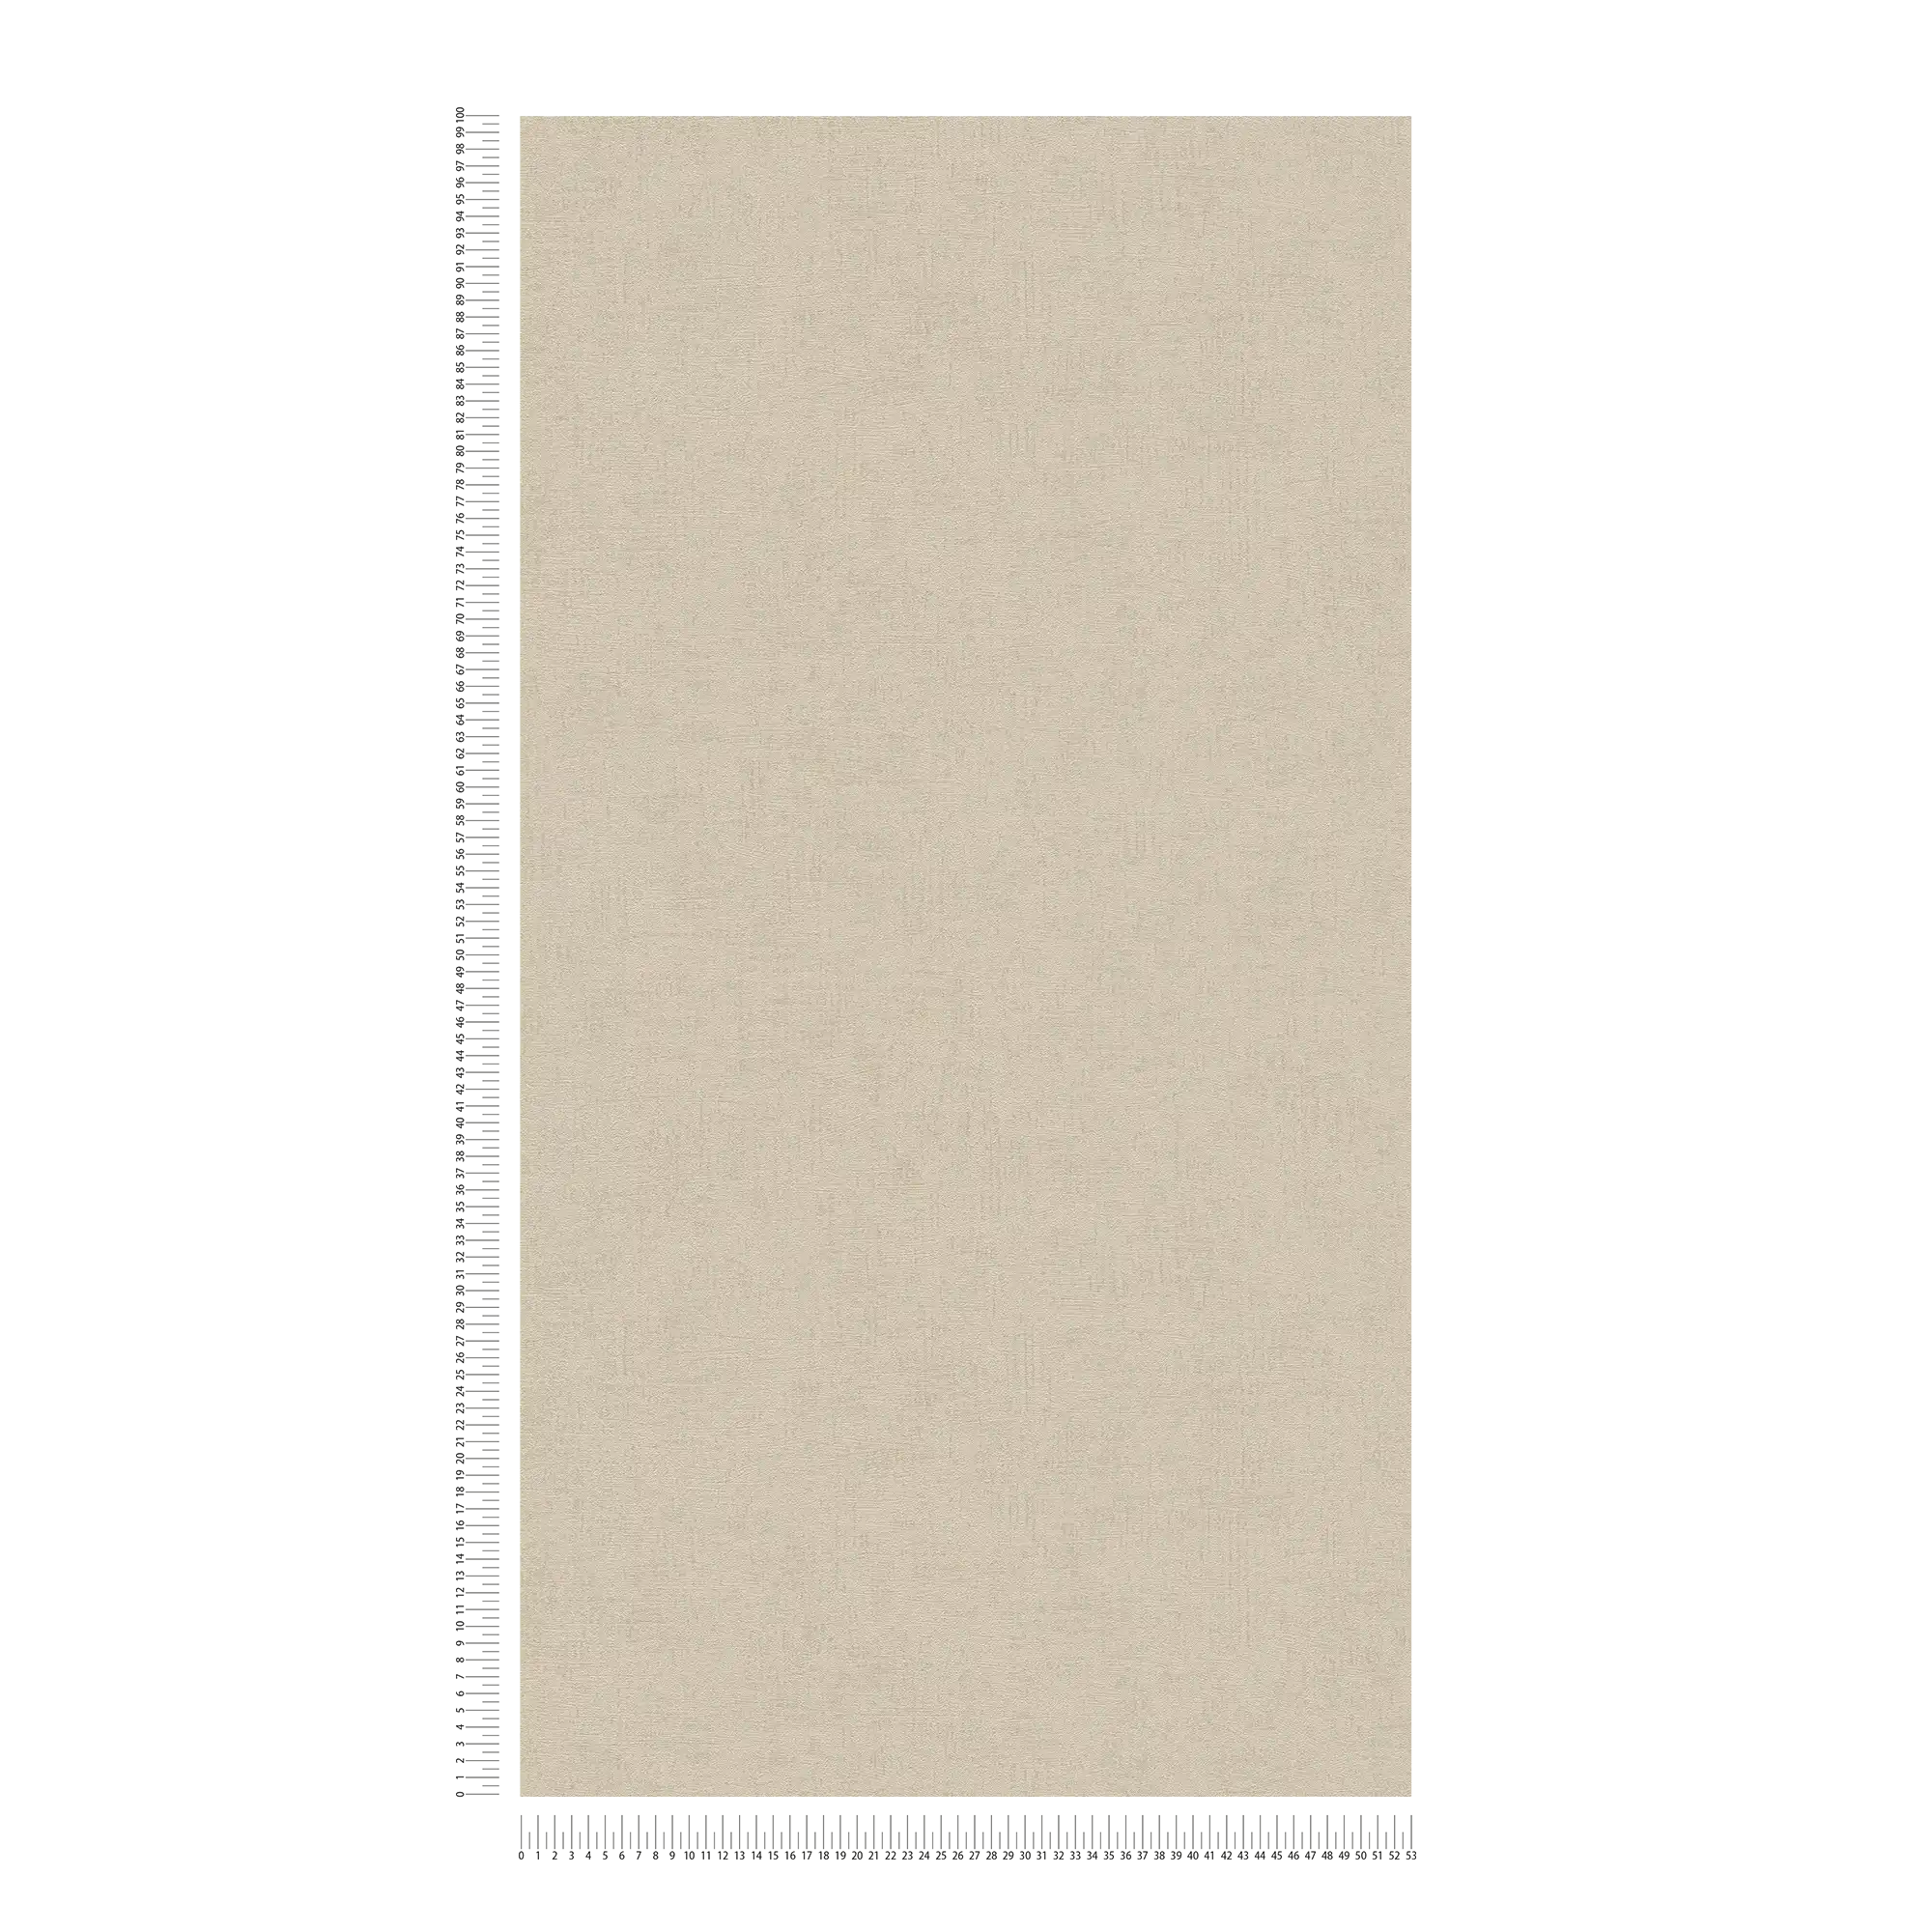             Carta da parati unitaria con struttura ed effetto glitter - beige, marrone, metallizzato
        